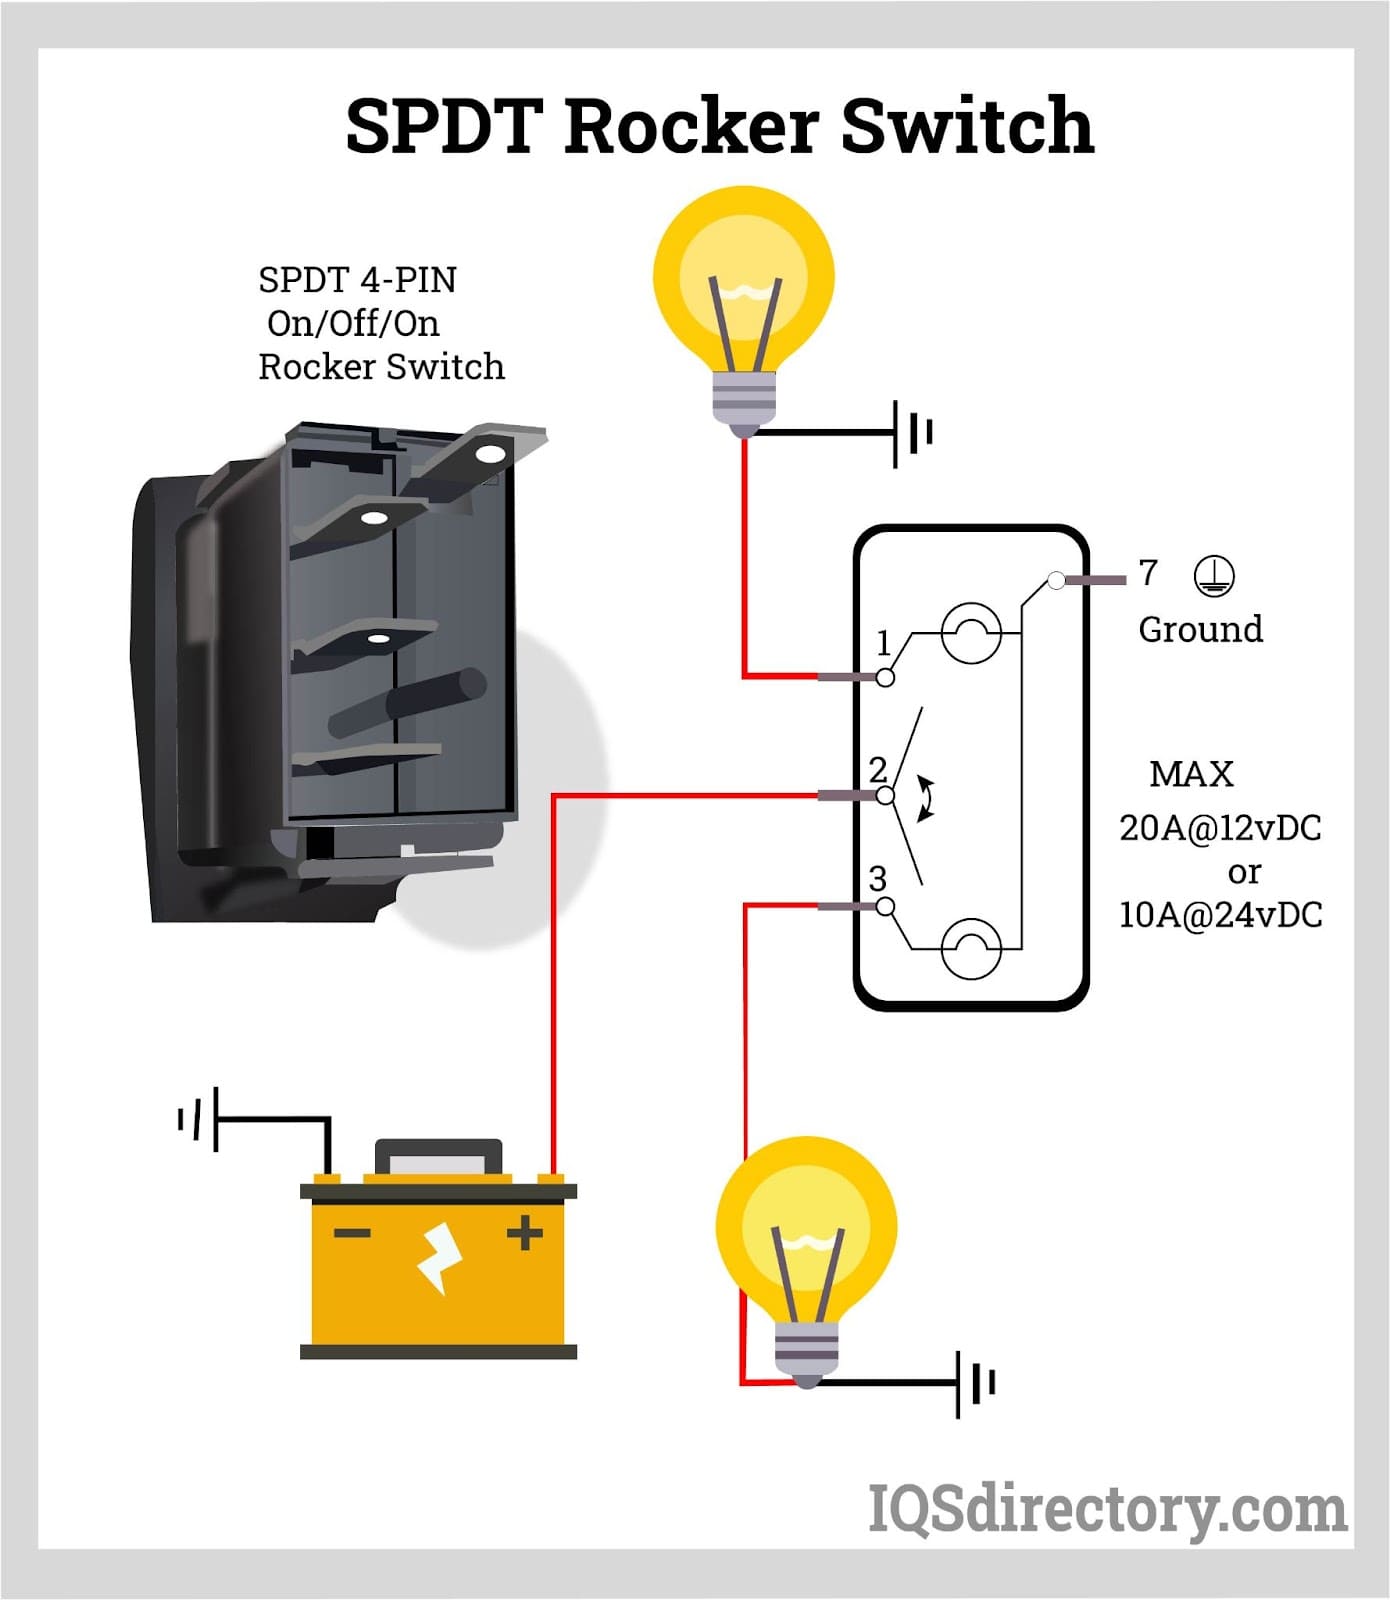 SPDT Rocker Switch